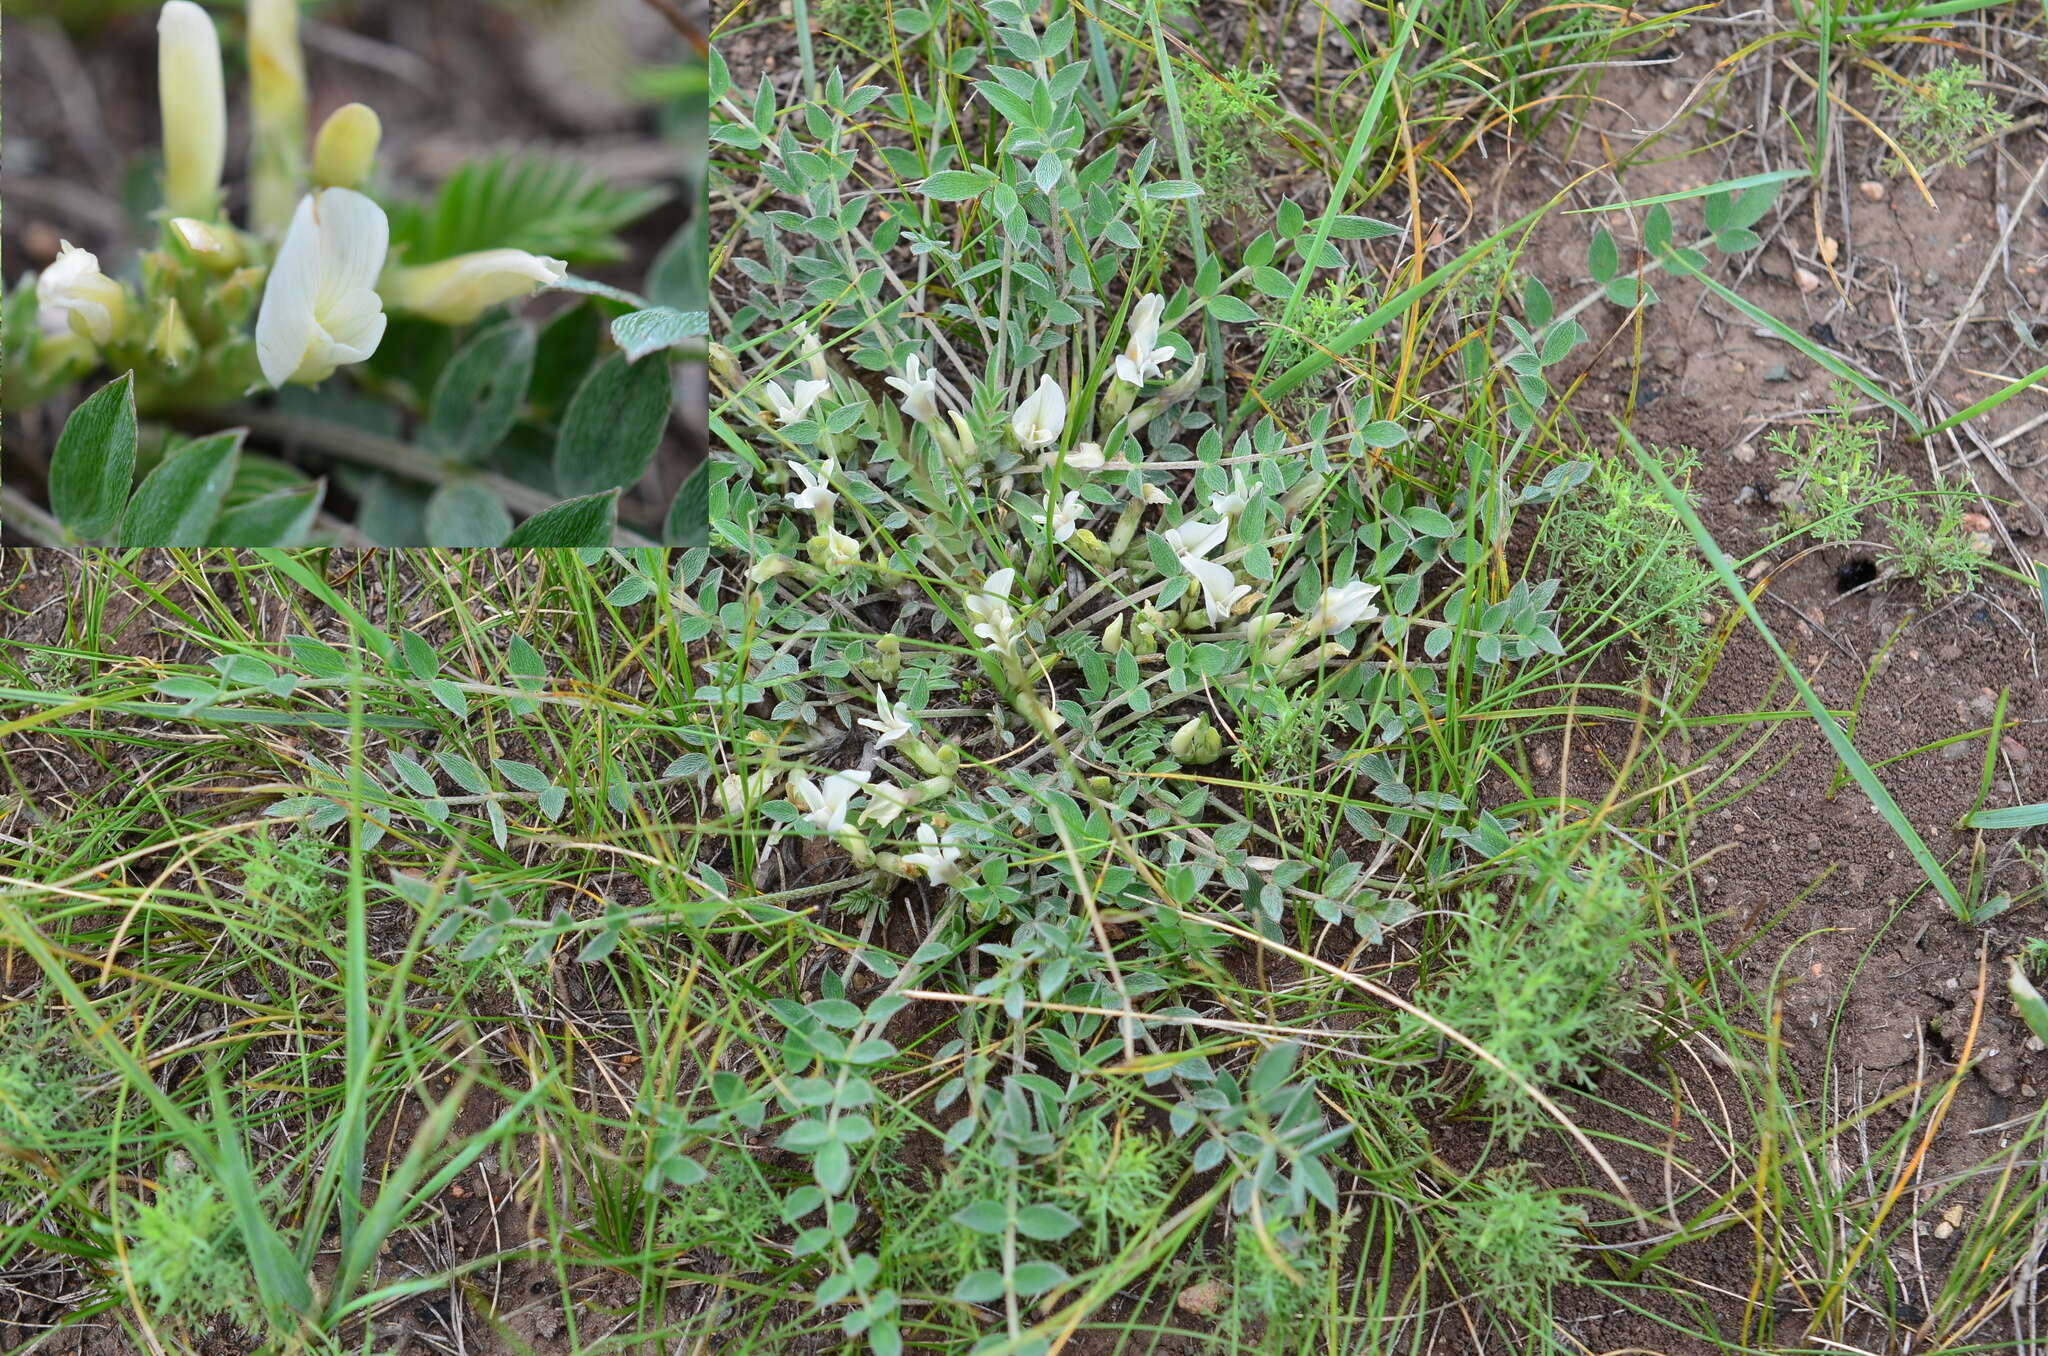 Image of Astragalus brevifolius Ledeb.